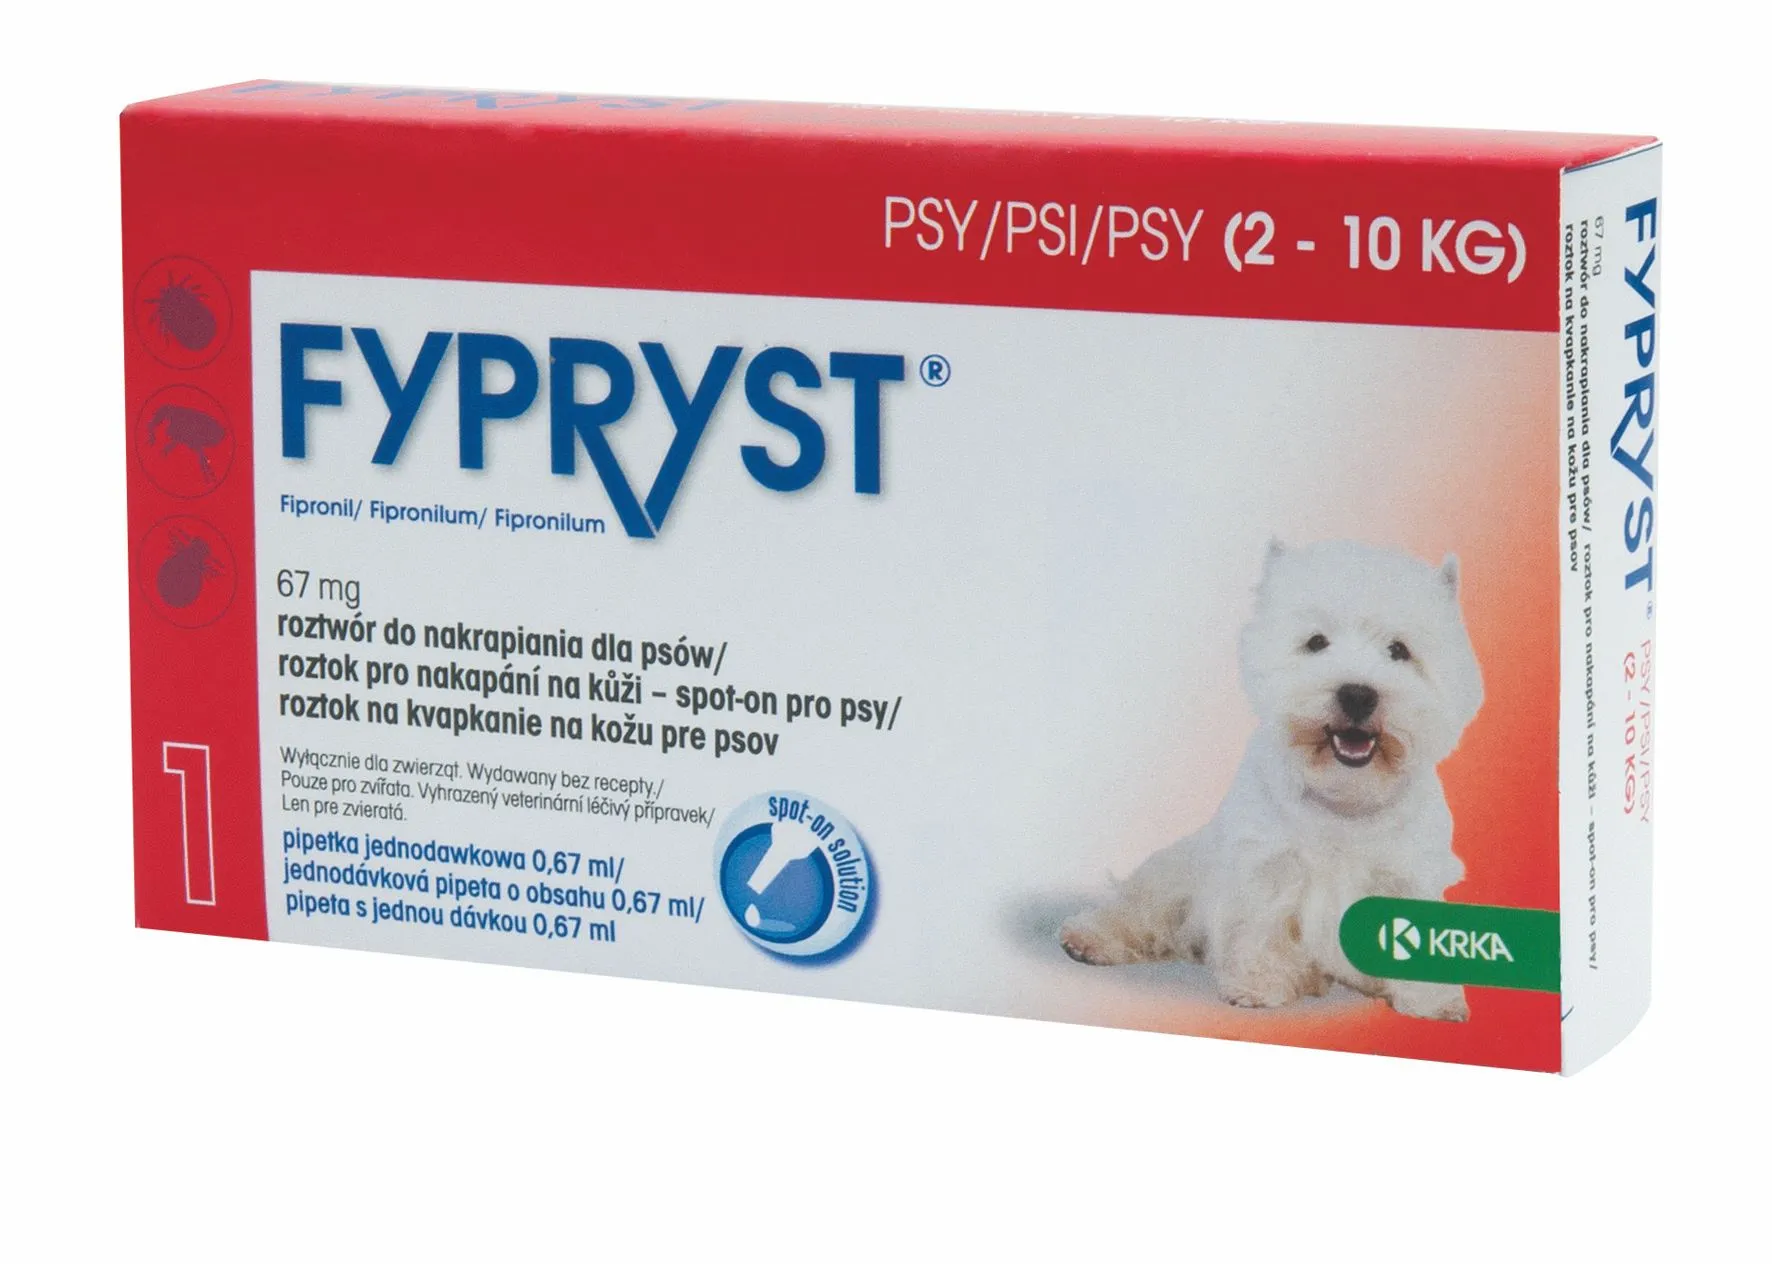 Fypryst Spot-on S pes 2-10 kg